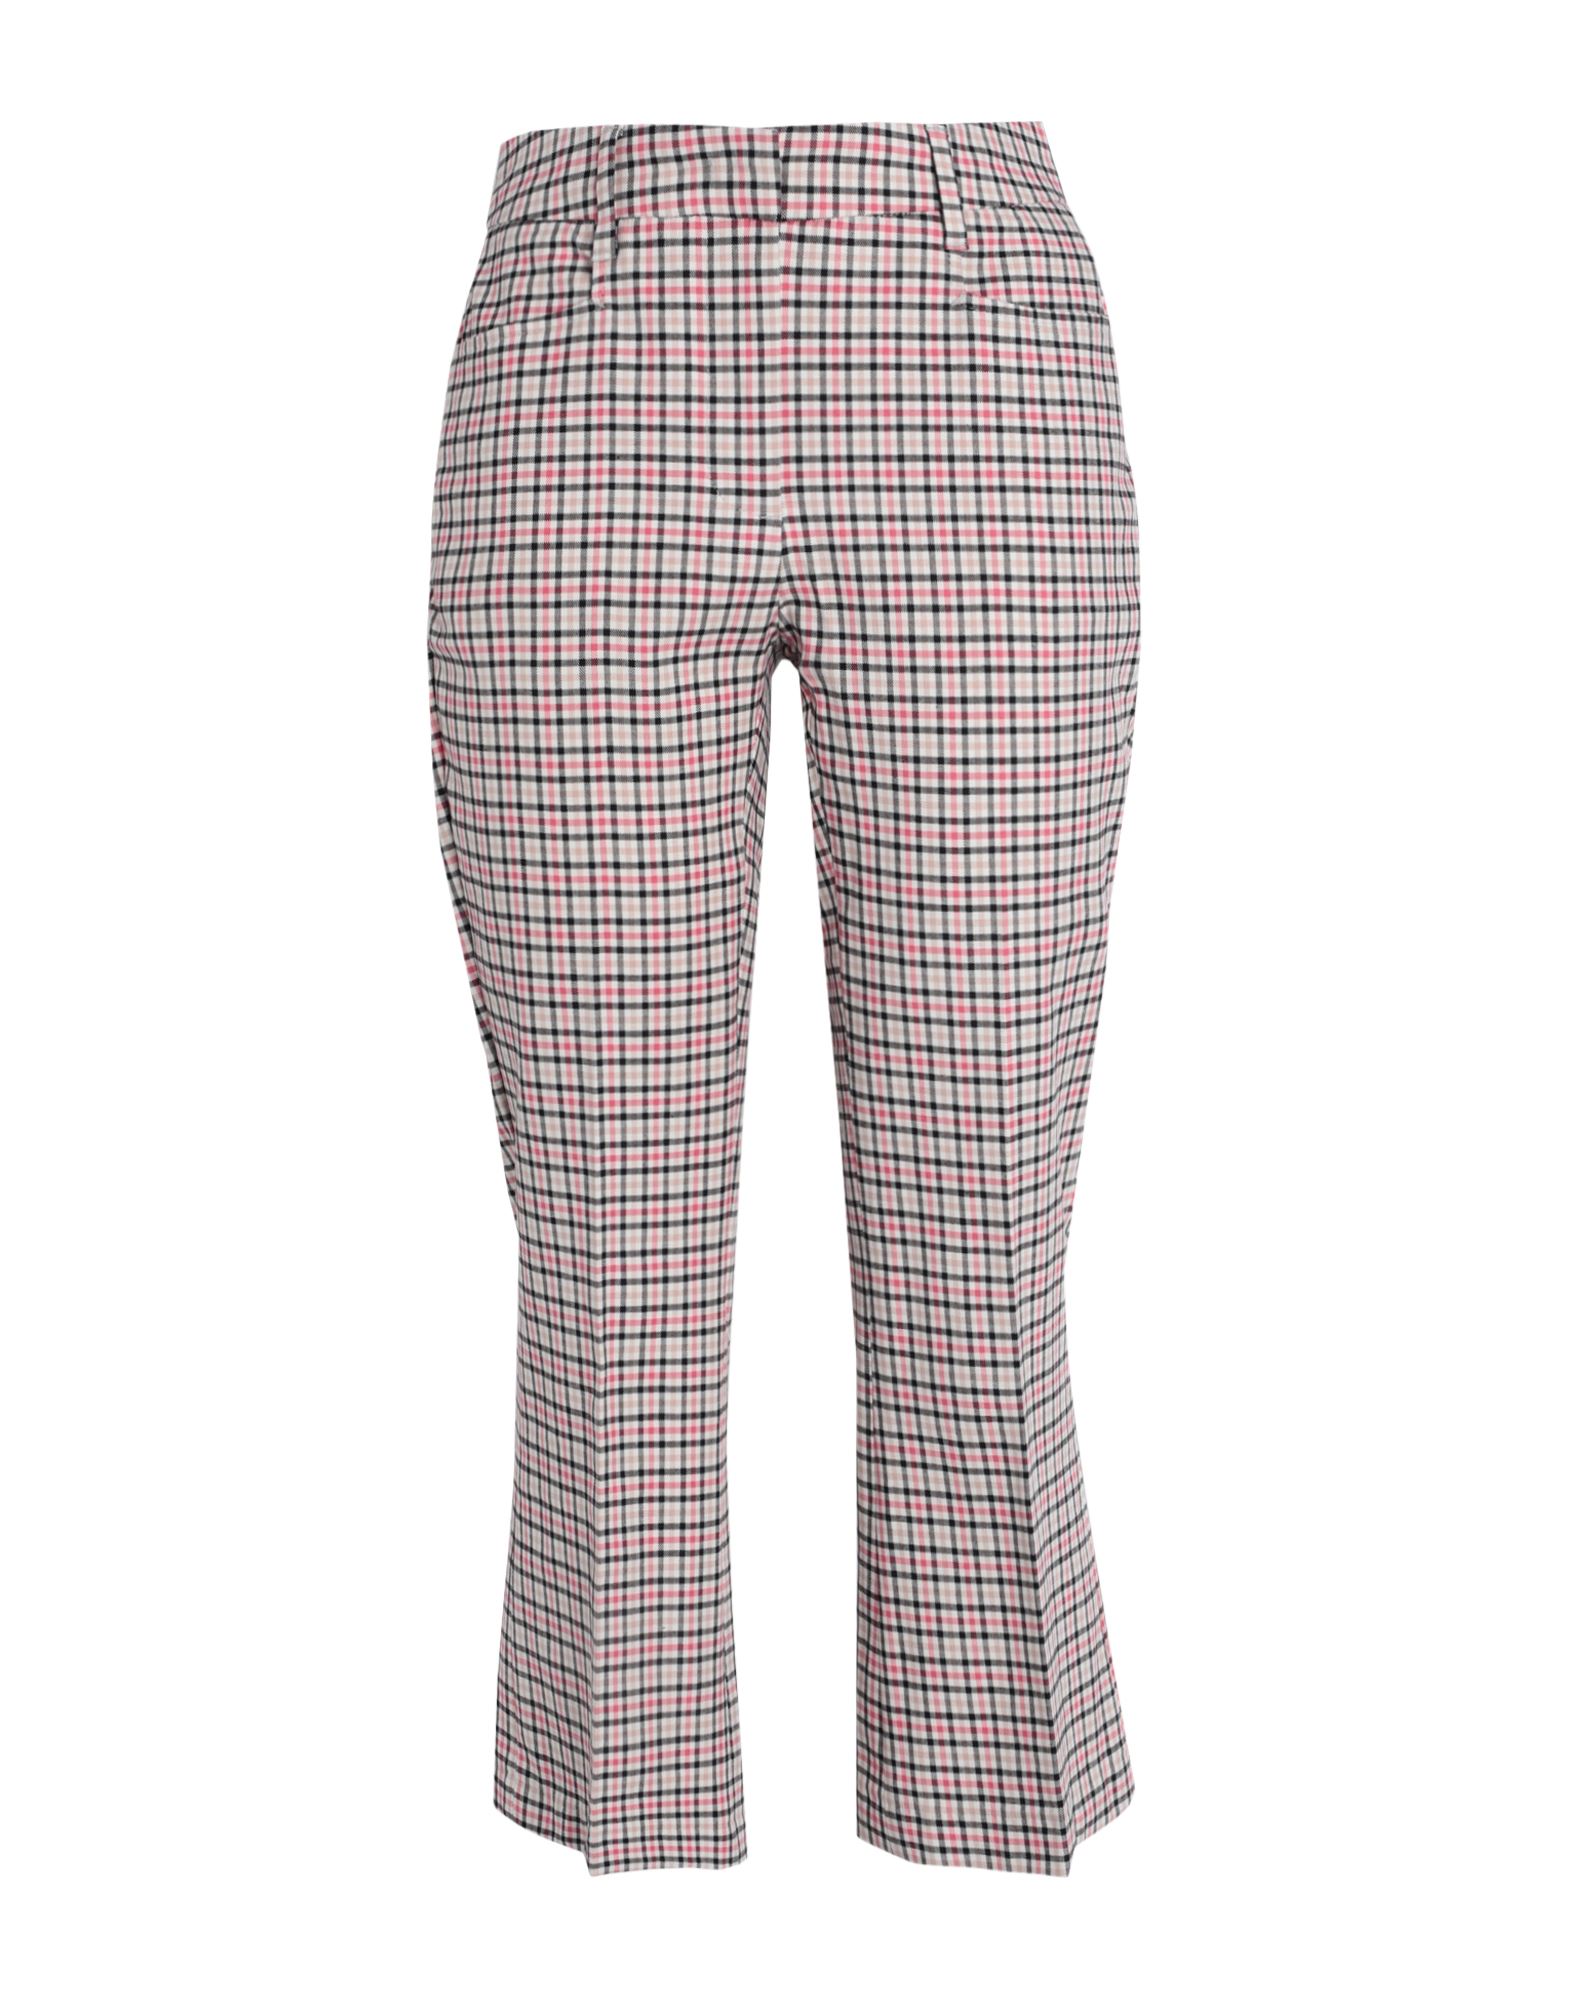 Max & Co . Woman Pants Pink Size 8 Cotton, Elastane